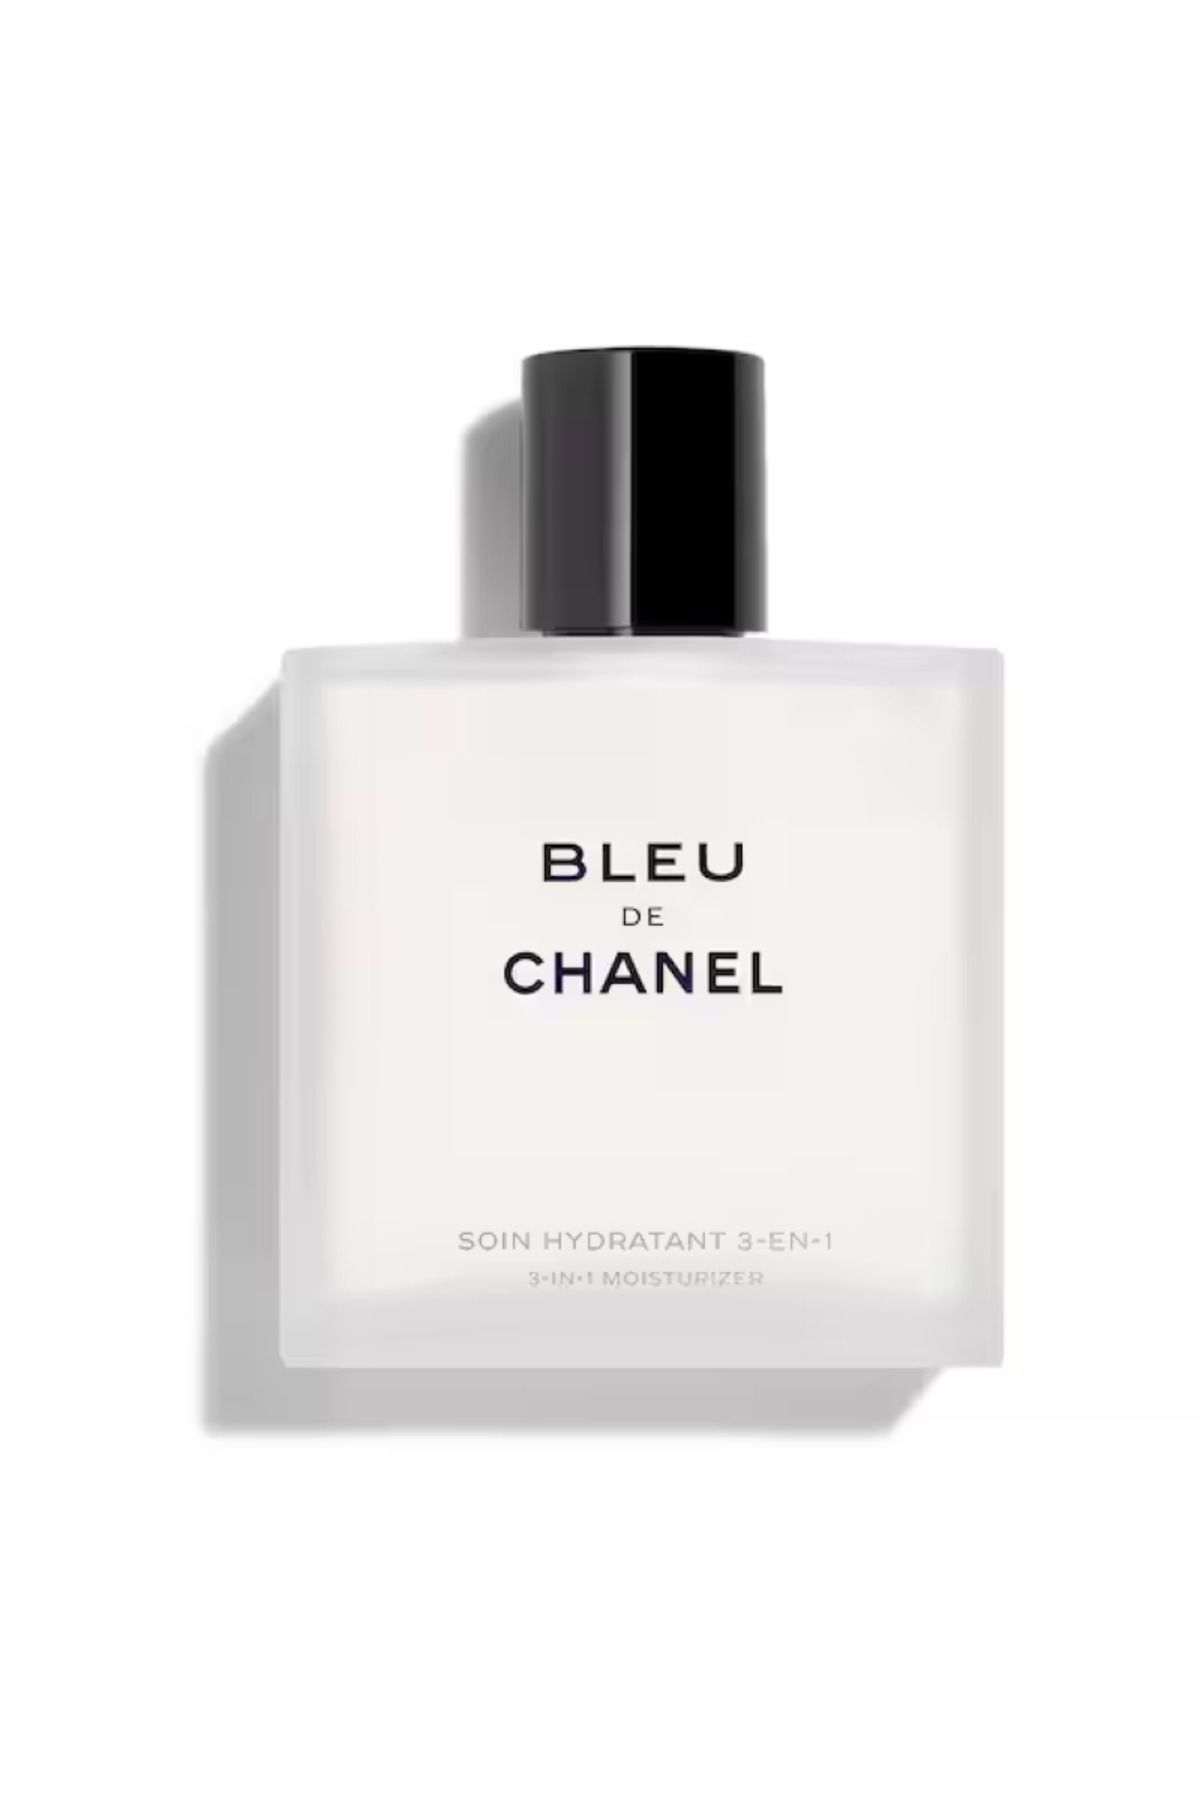 Chanel BLEU DE CHANEL Nemlendirici 3'ü 1 Arada Nemlendirici, Tıraştan Sonra Cildi Yatıştırır 100 ML